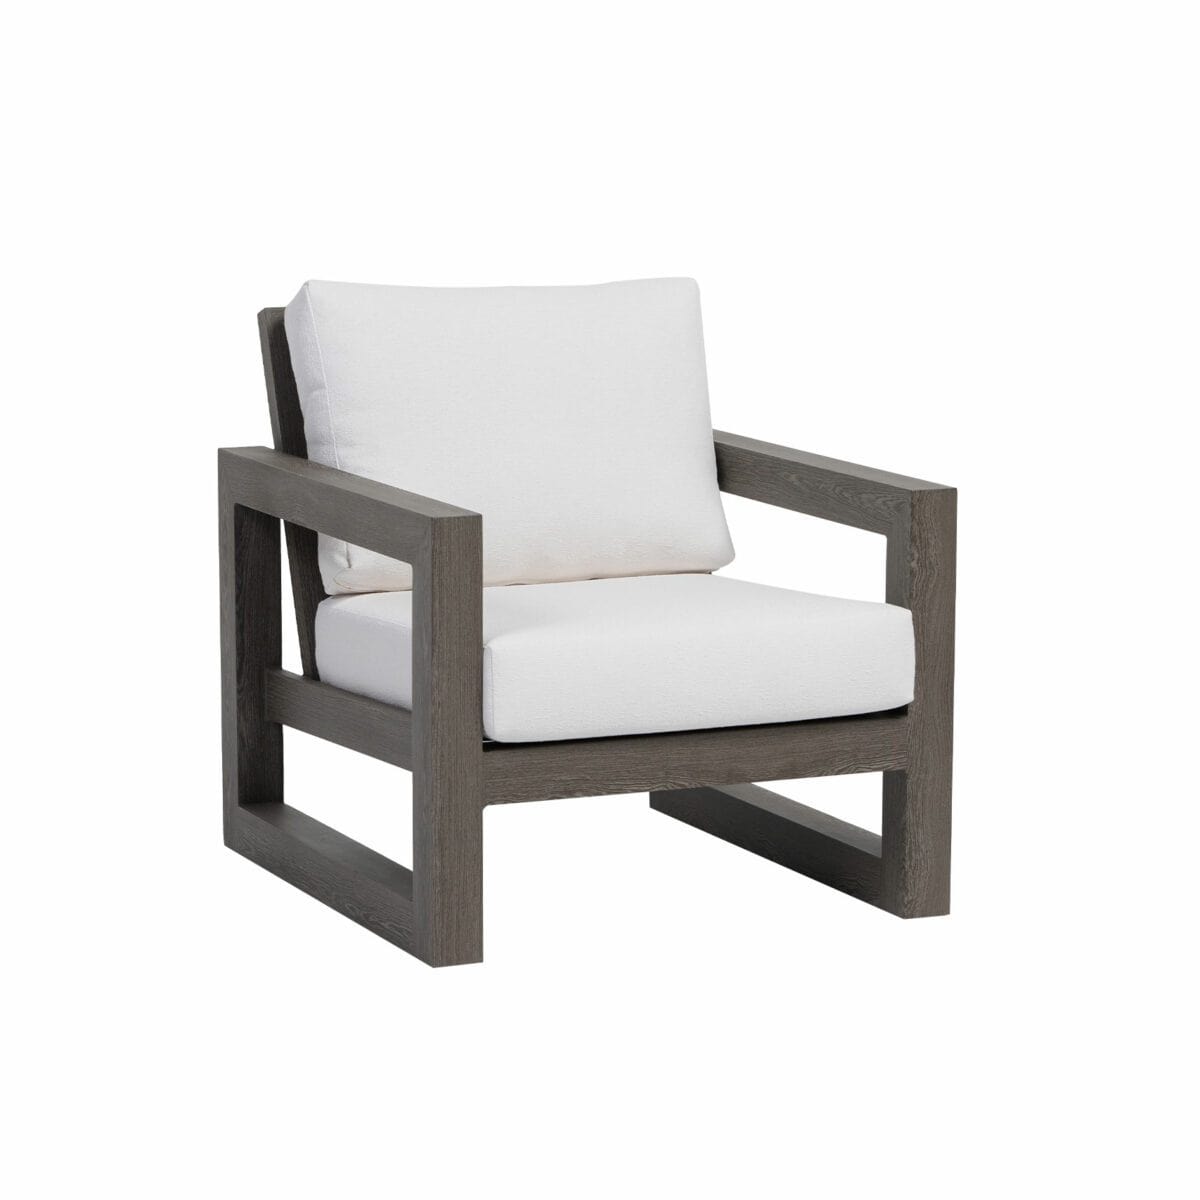 Ratana Furniture - Chairs Milano Club Chair